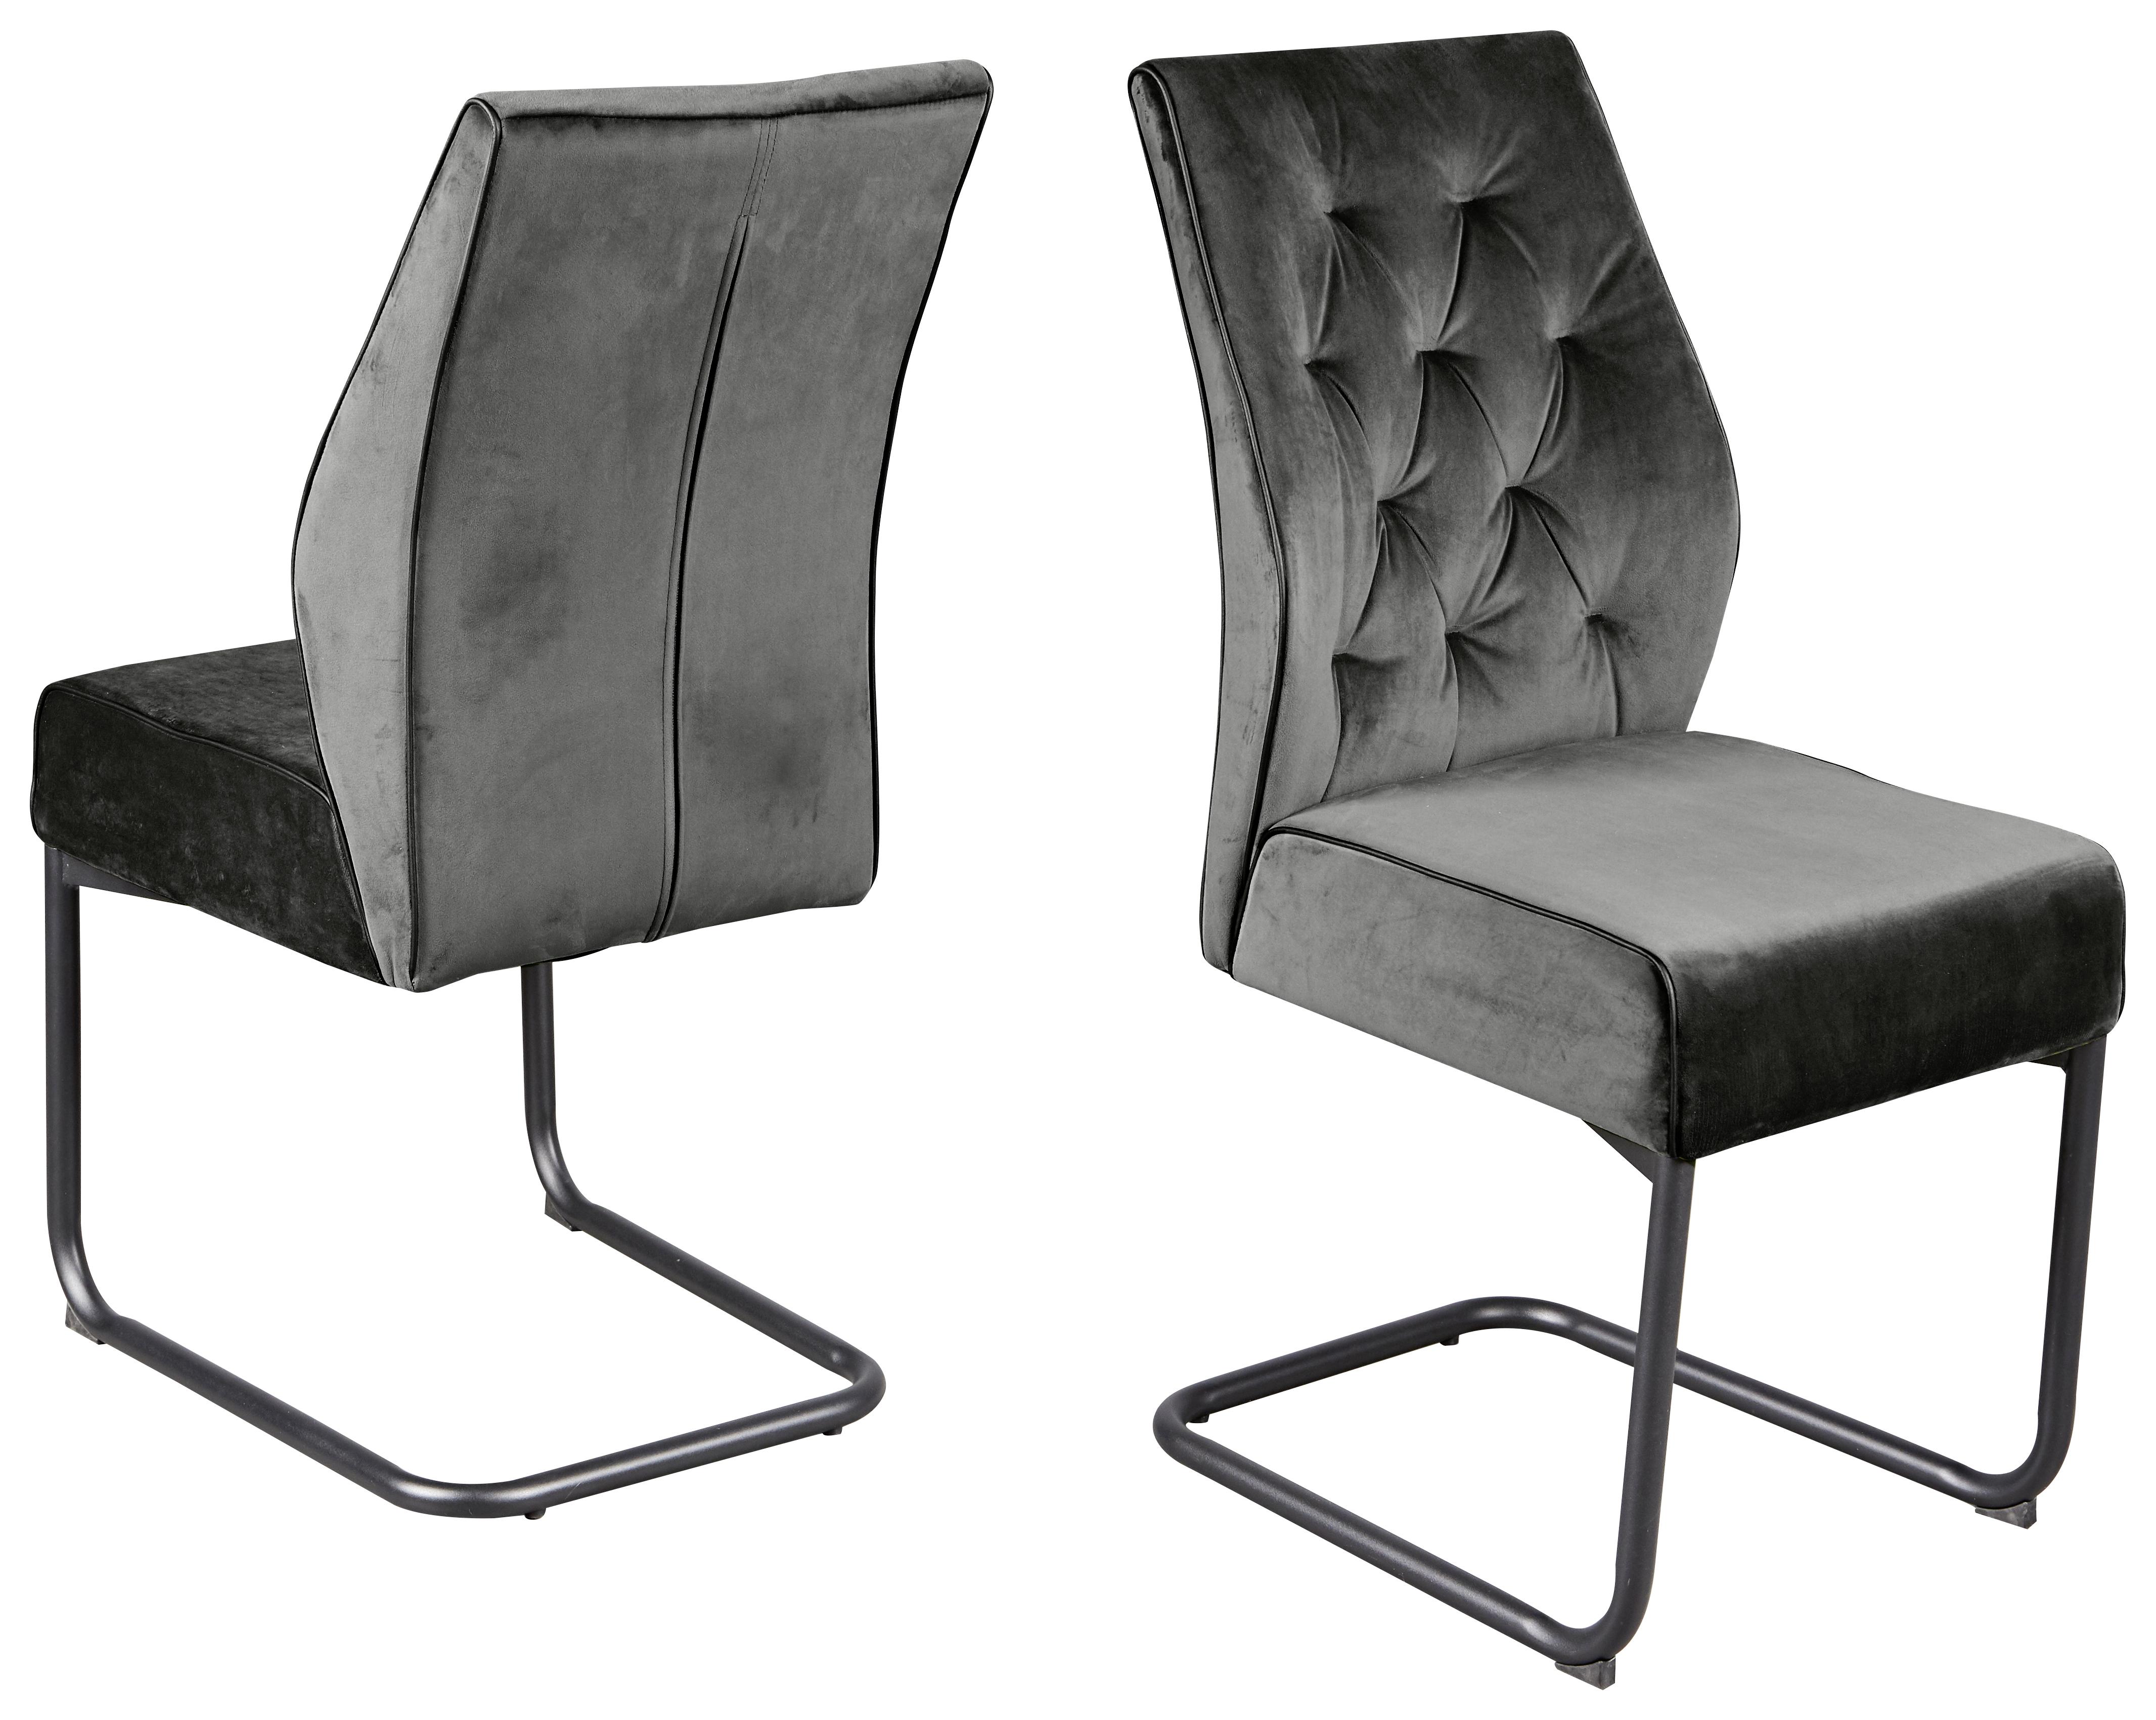 Jídelní Židle Manacor 2 - šedá/černá, Design, kov (45/97/59cm)